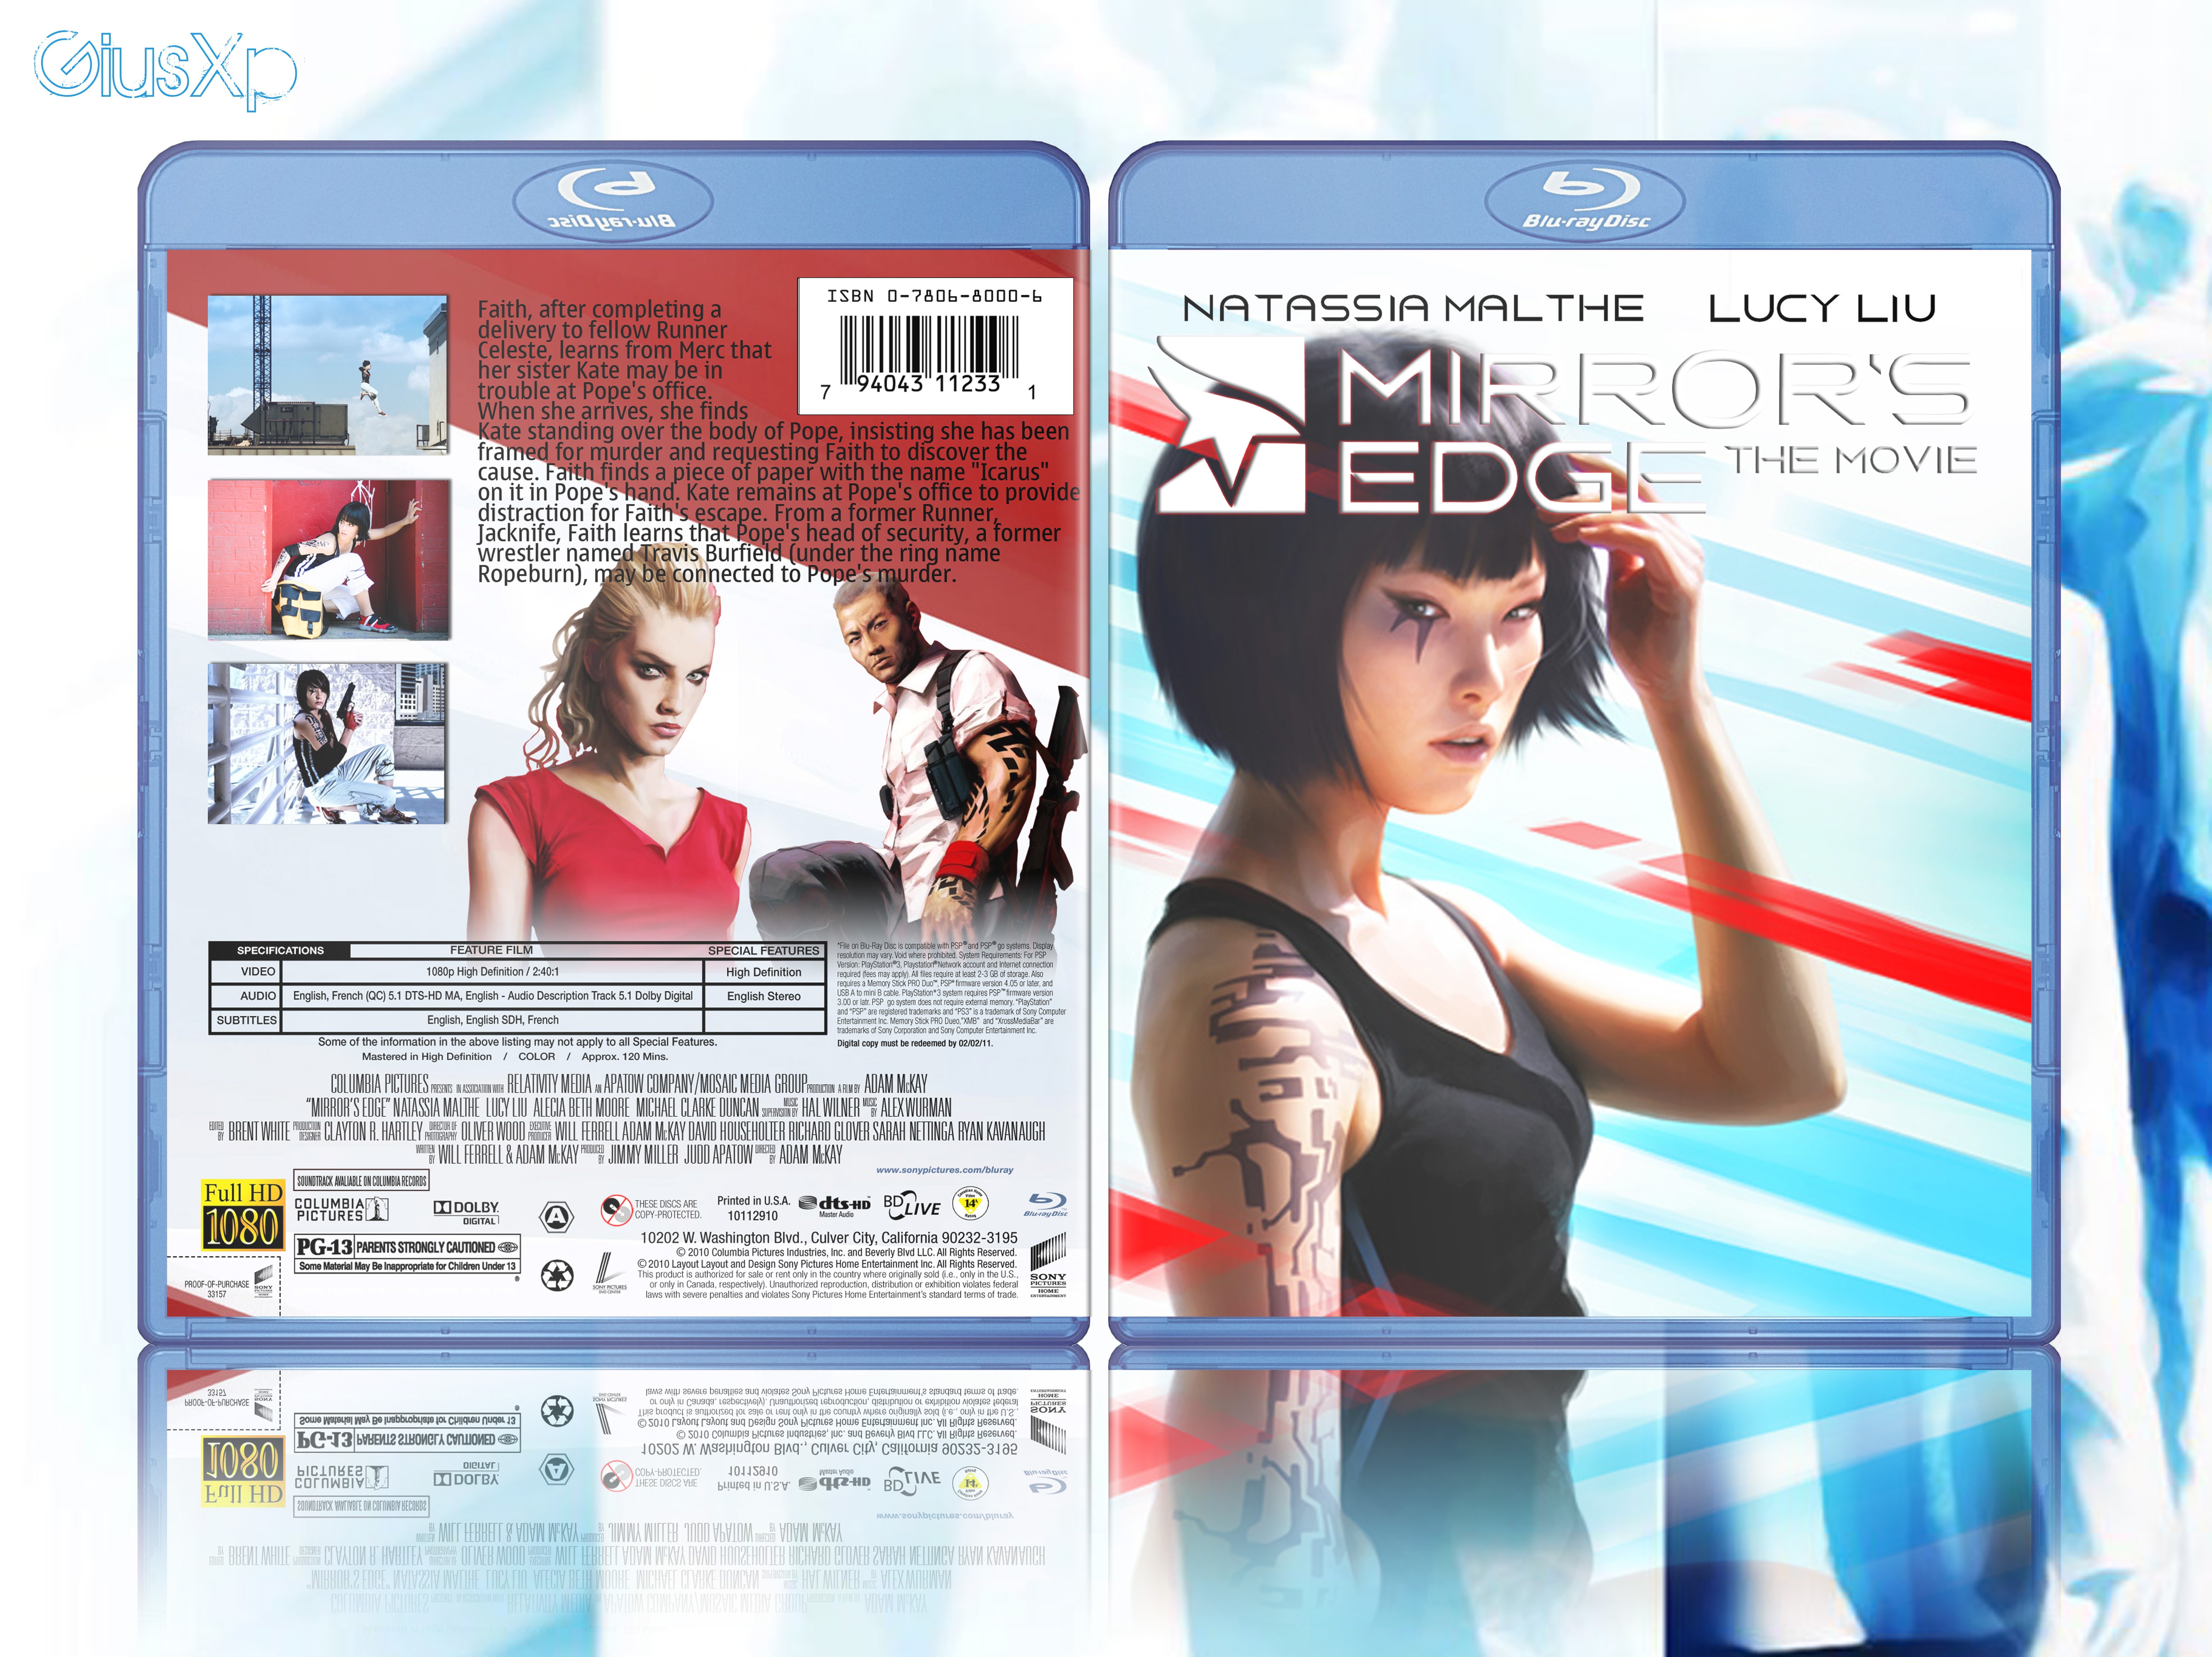 Mirror's Edge: The Movie box cover